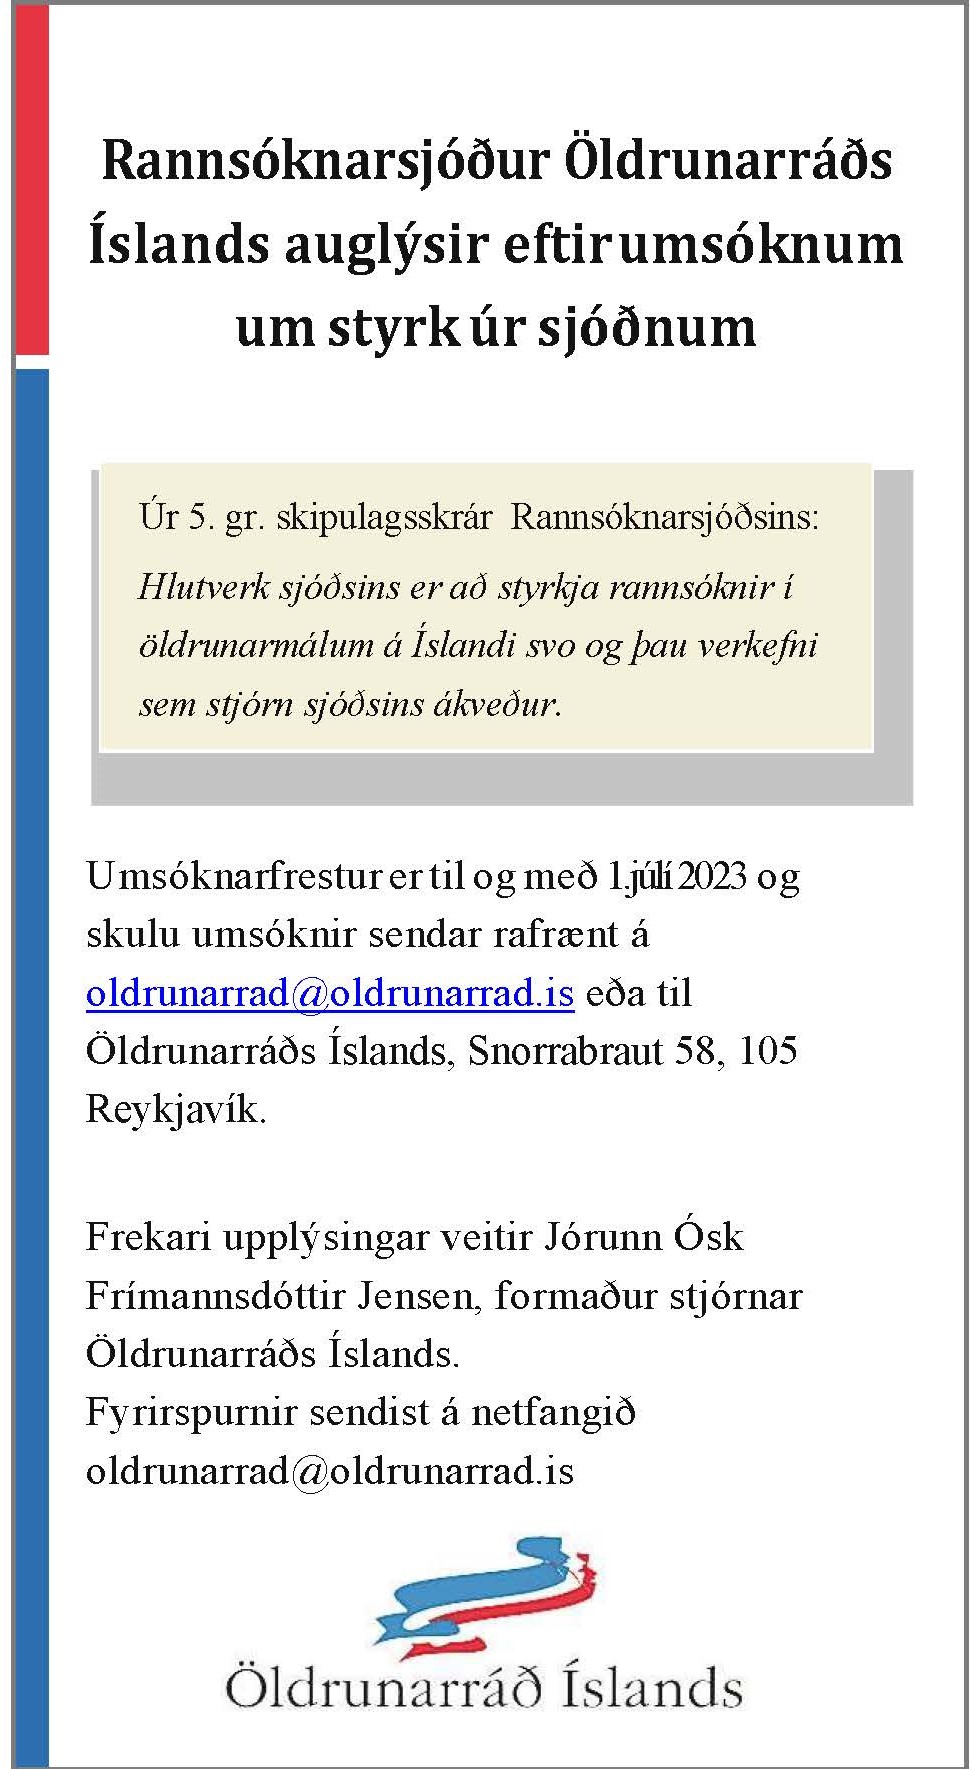 Rannsóknarsjóður_2023-_stor.jpg